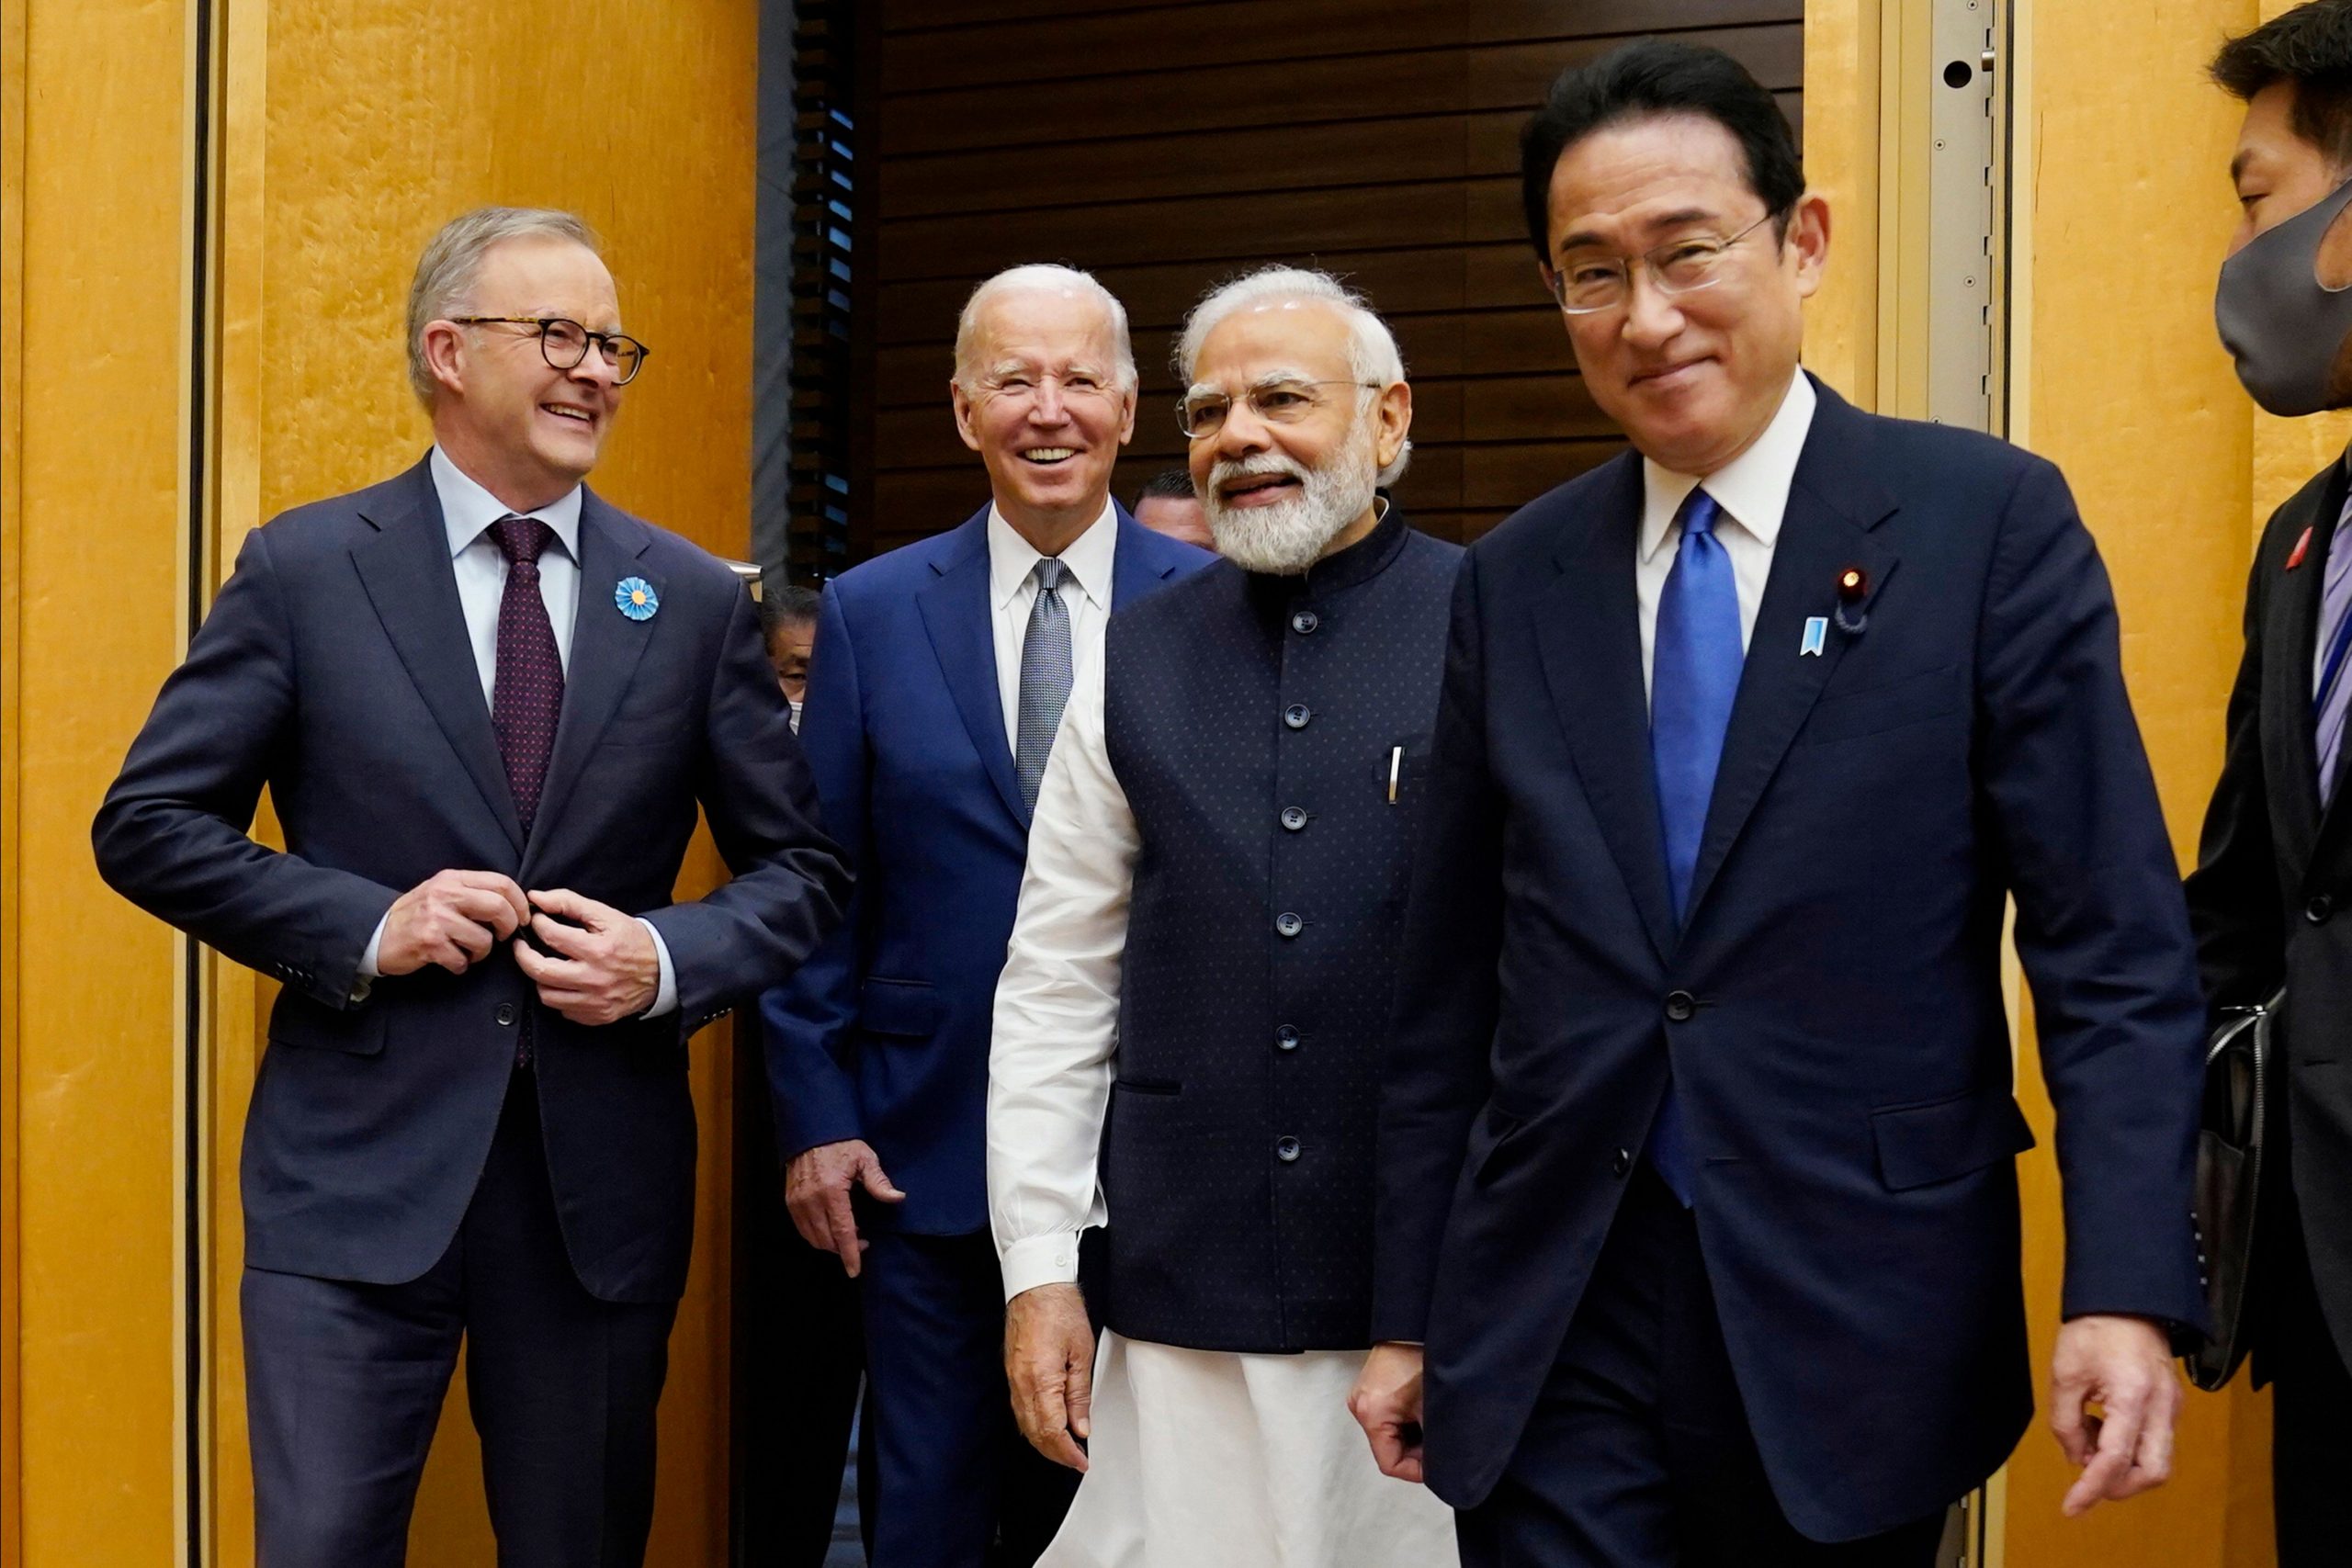 PM Modi vouches for free, open, inclusive Indo-Pacific region at Quad summit